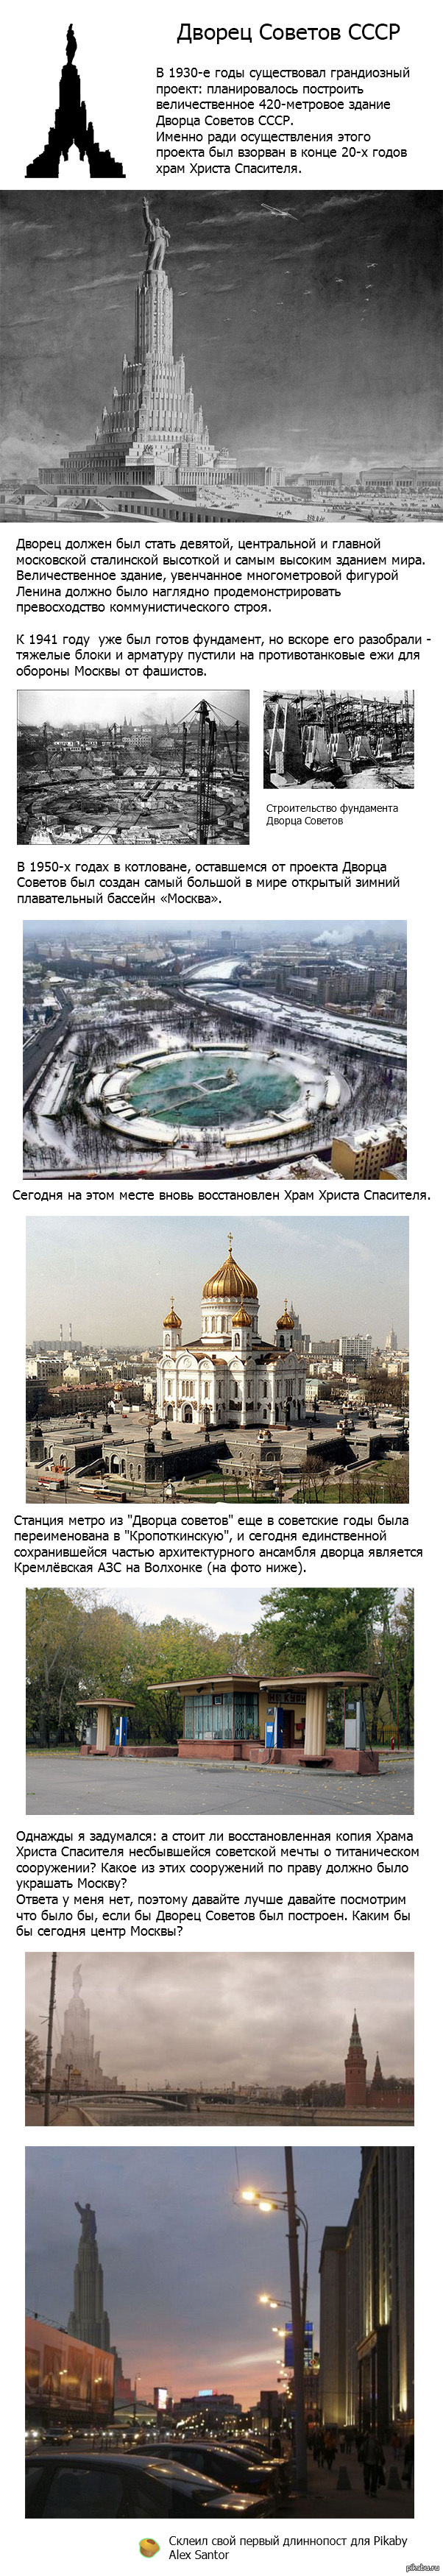 Дворец Советов: главная архитектурная утопия Сталина - Узнай Россию